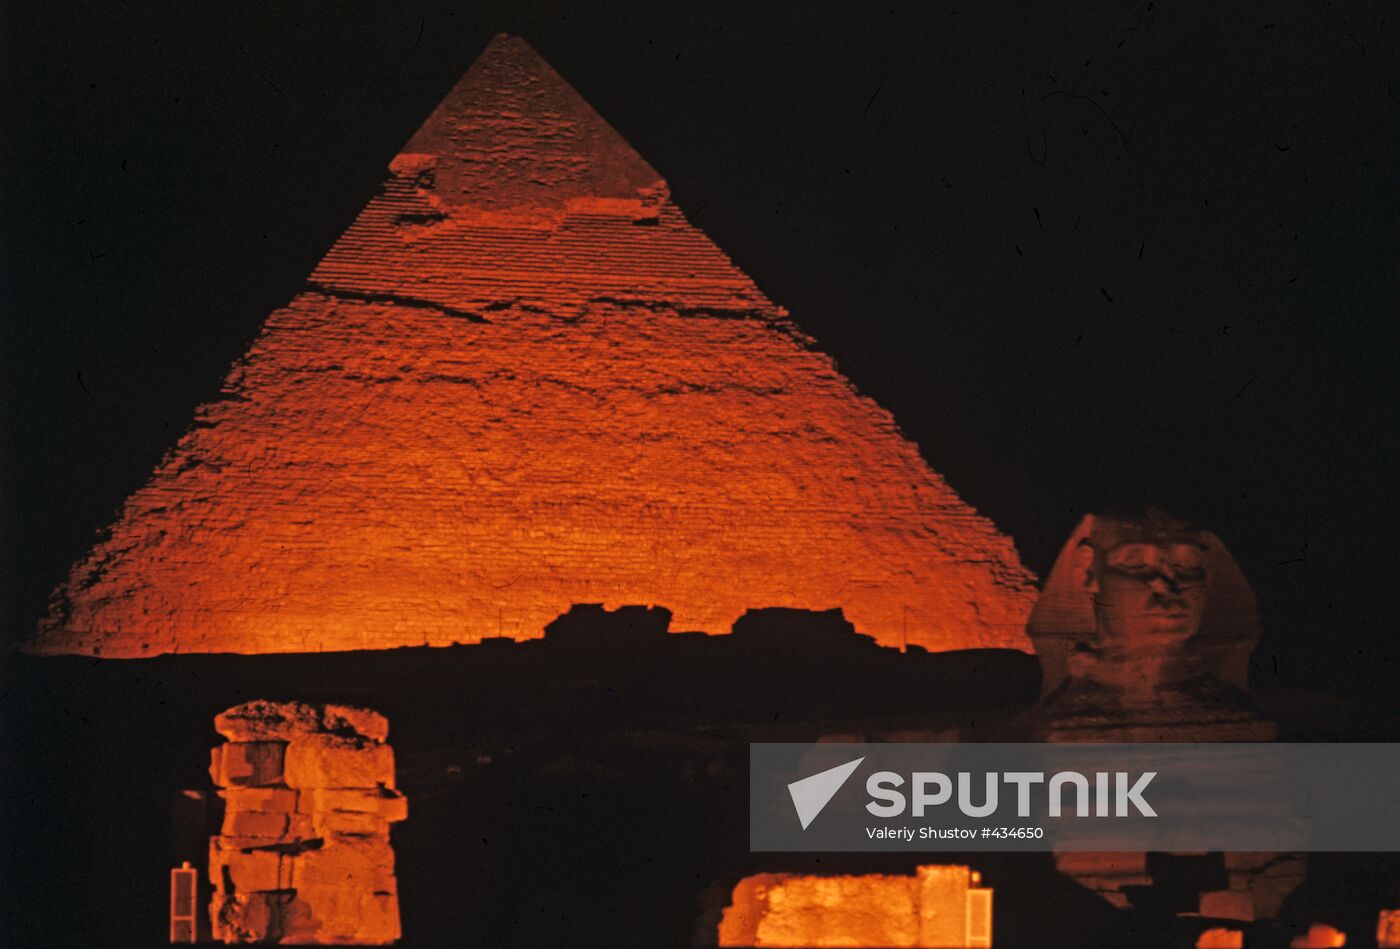 Sphinx and Pyramids in Giza